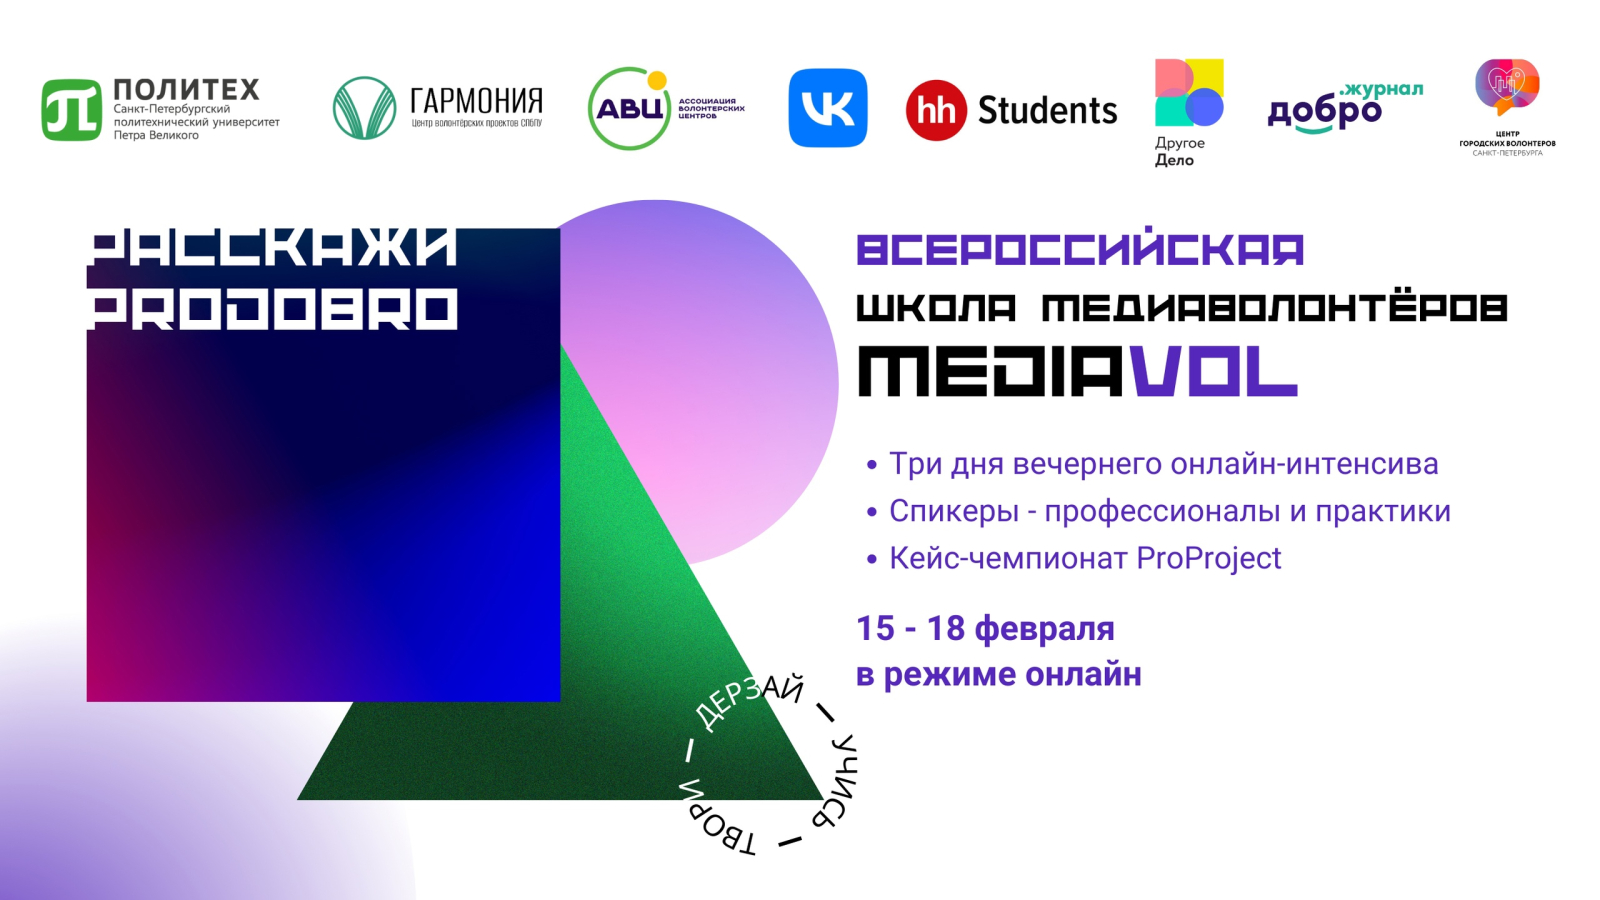 Всероссийская школа медиаволонтеров MediaVOL